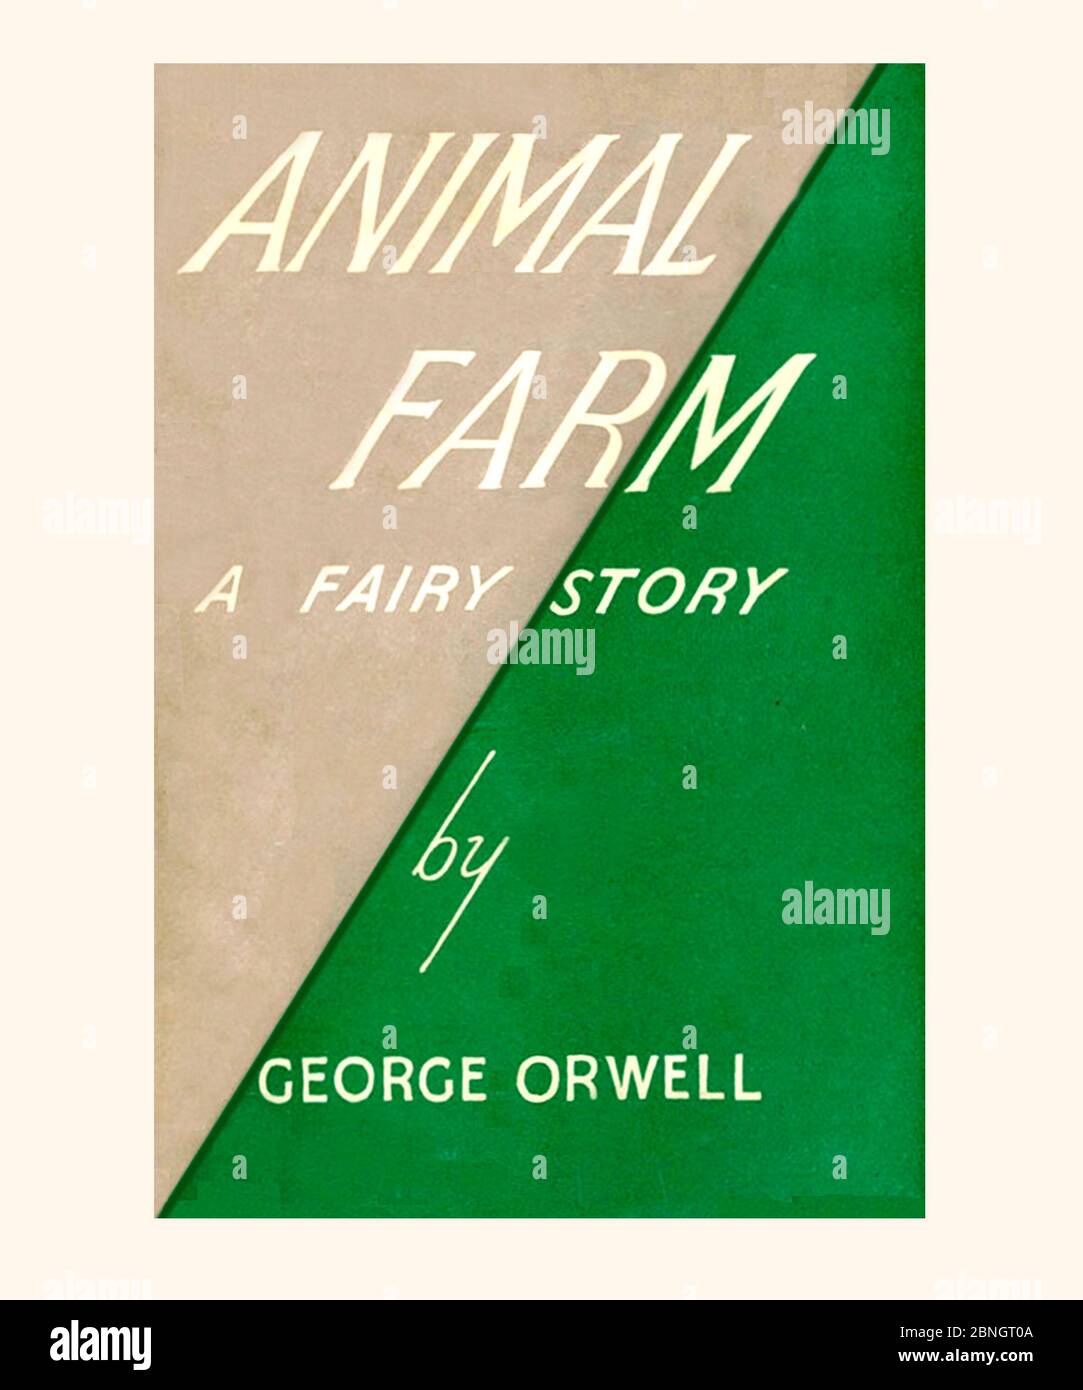 George Orwell Animal Farm A Fairy Story première édition couverture de livre 1945 rafraîchie et remise à zéro Banque D'Images